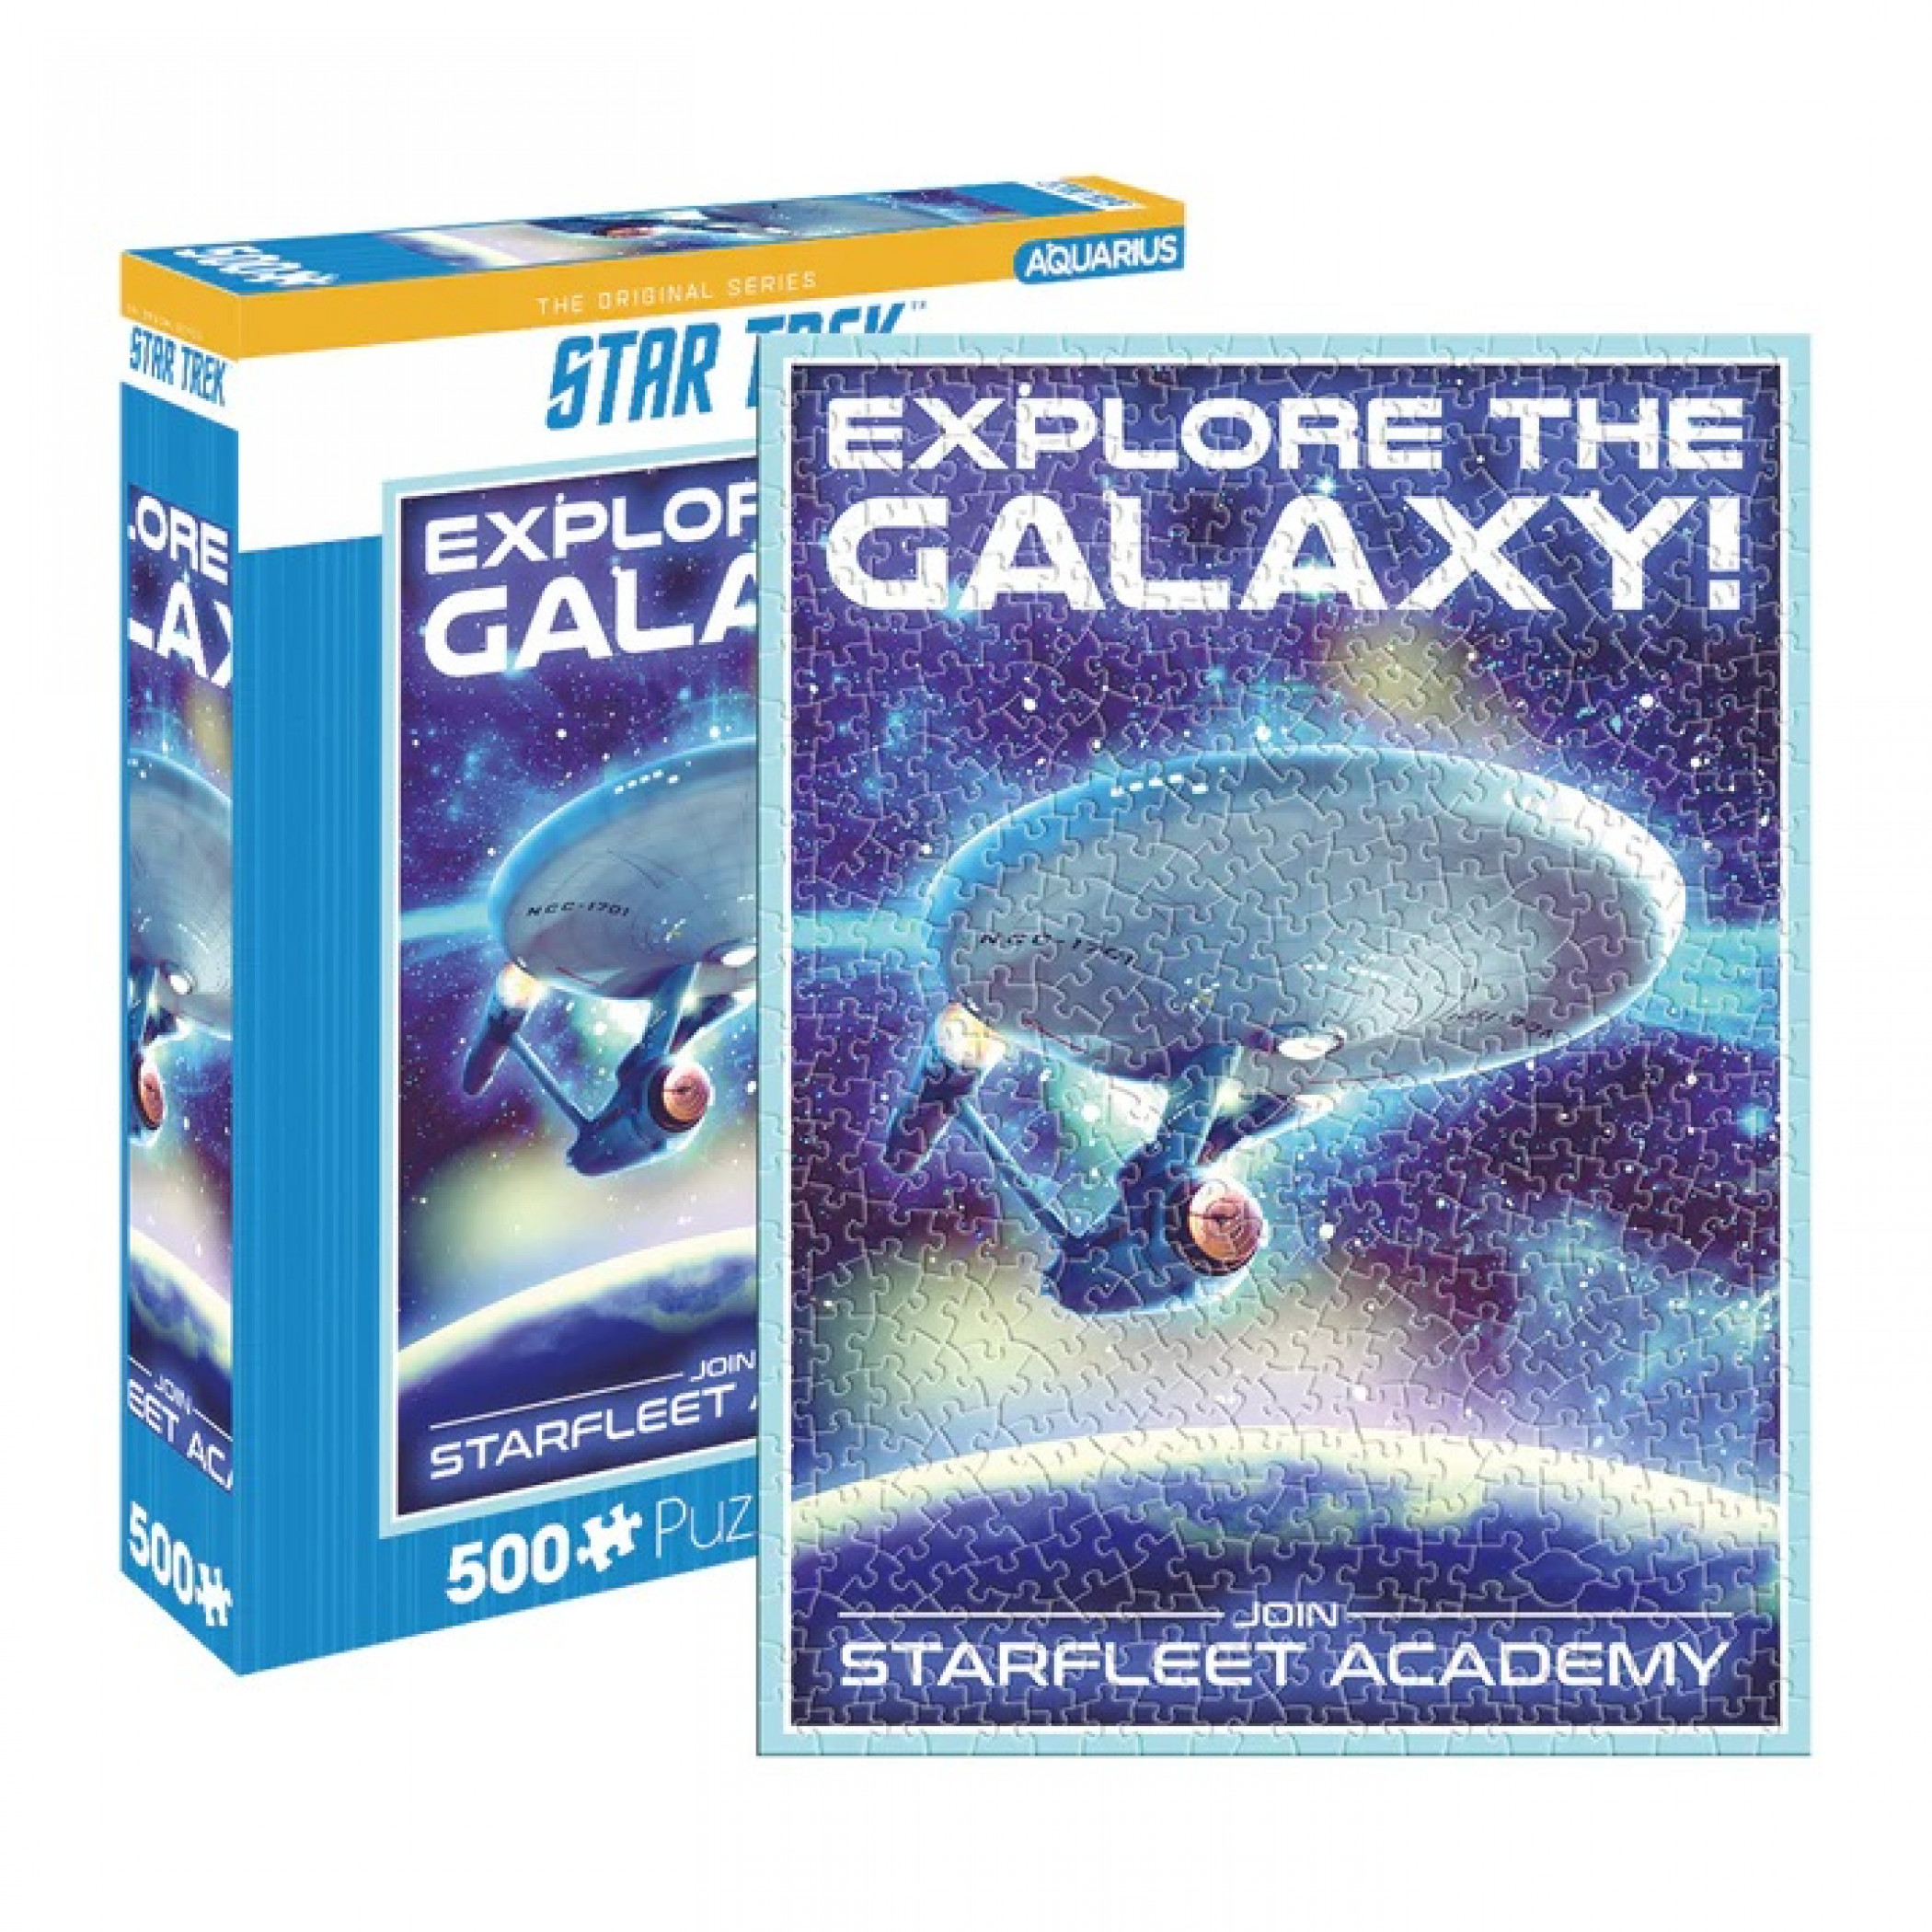 Star Trek Starfleet Academy Explore 14" x 19" 500 Piece Puzzle